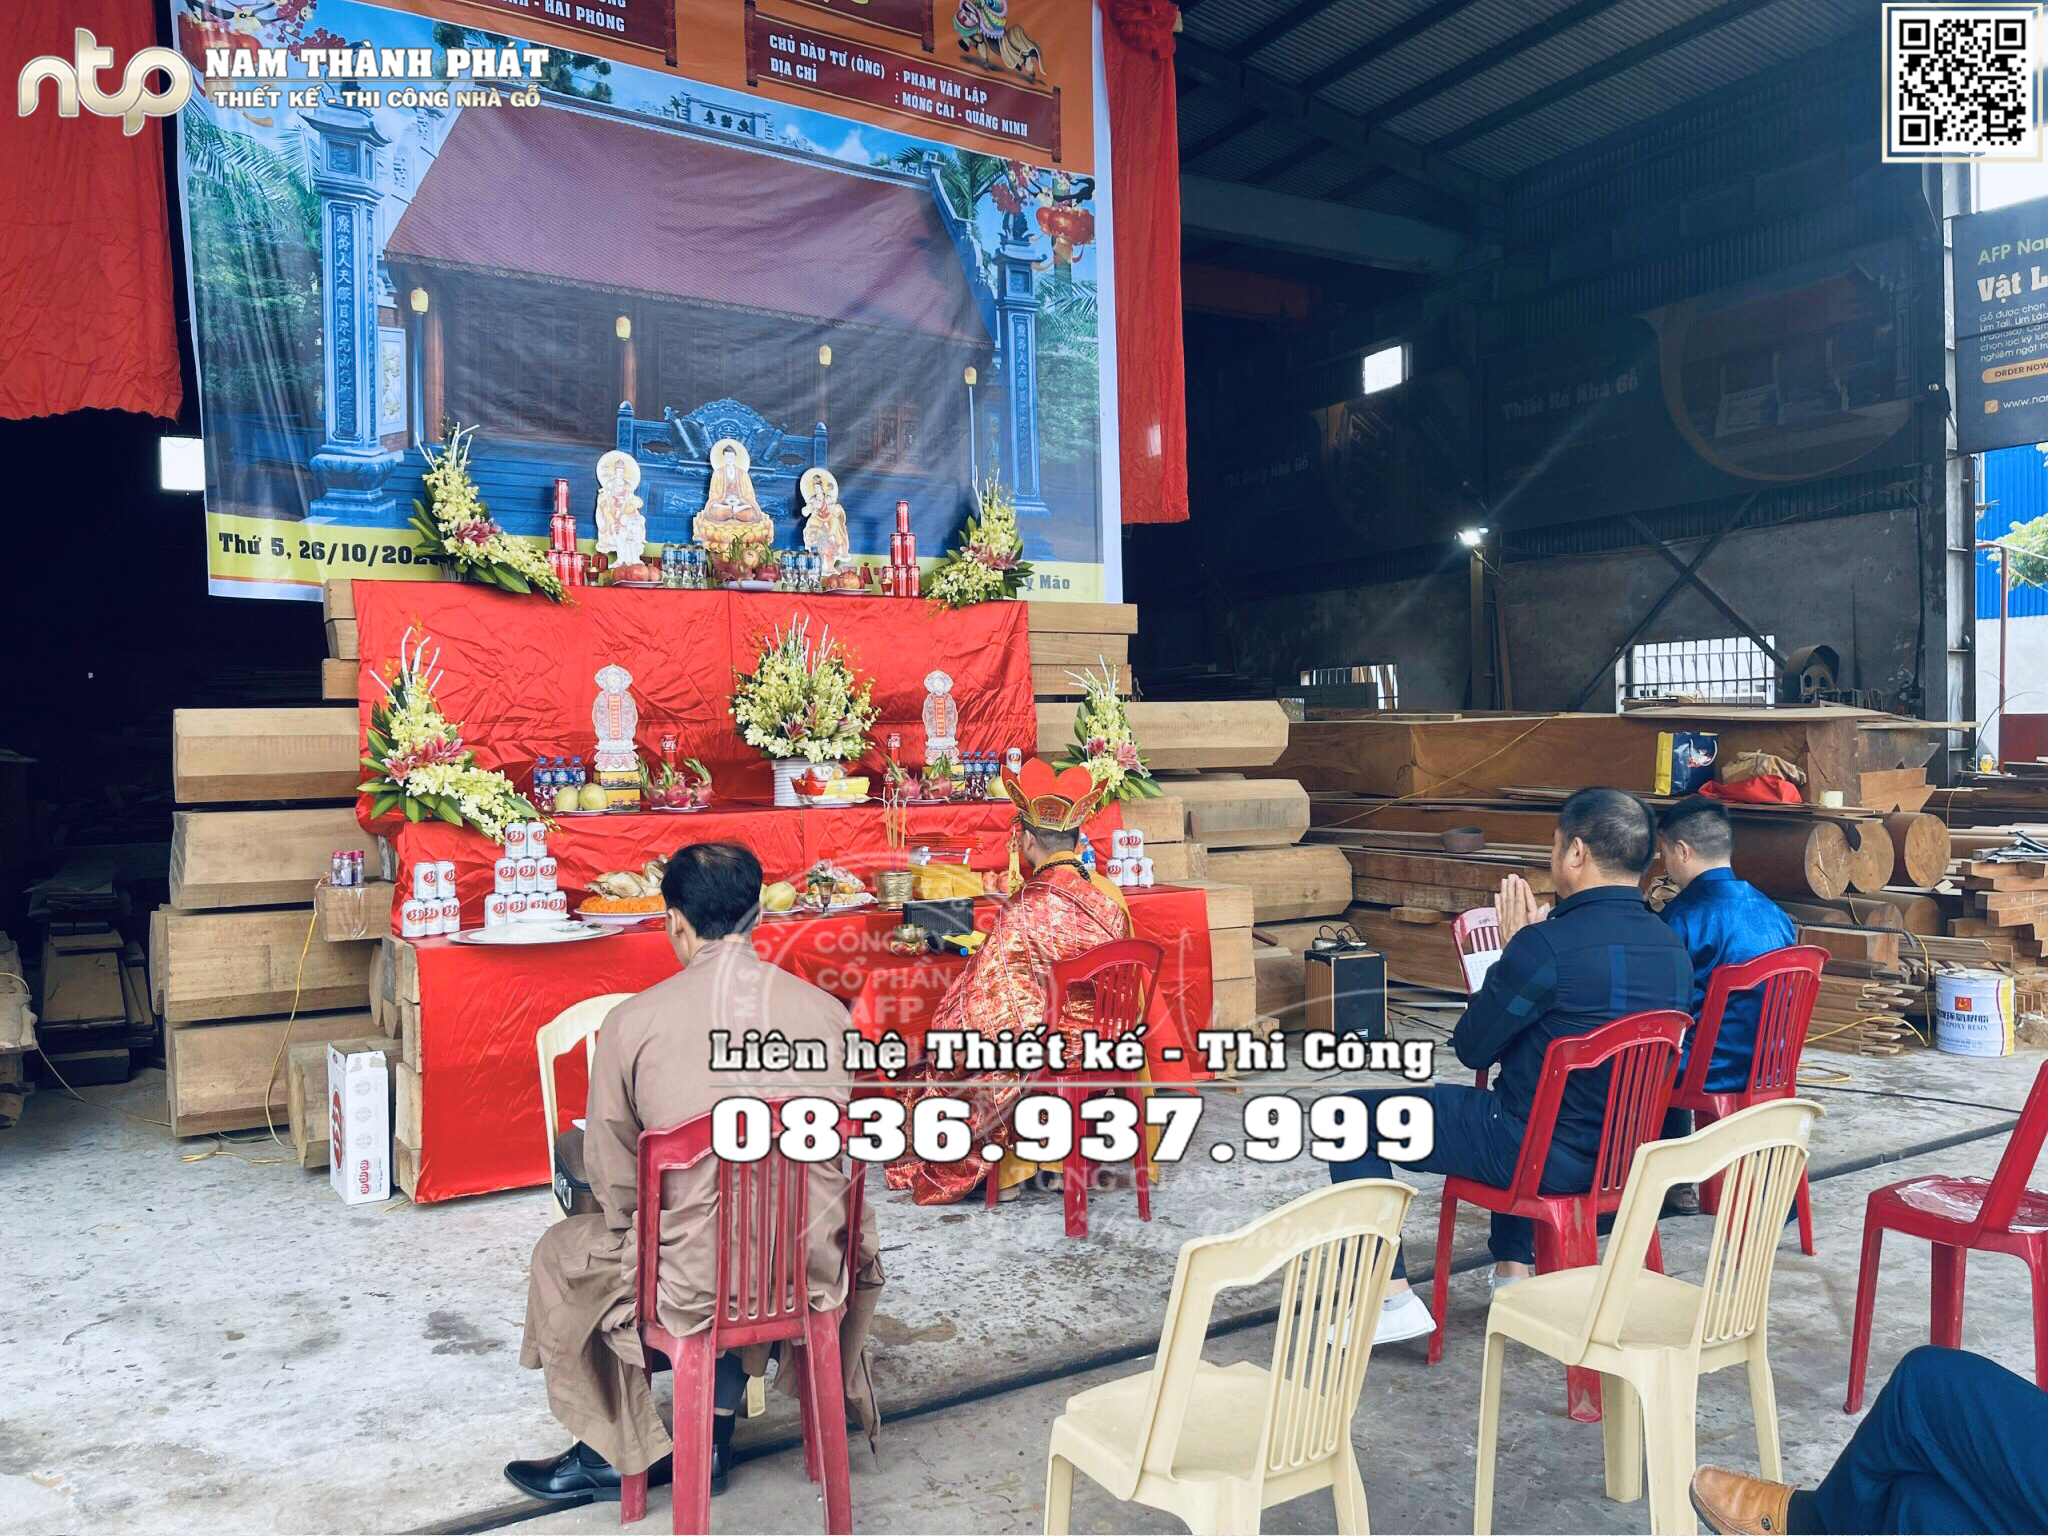 Lễ phạt mộc nhà gỗ Lim 3 gian tại Quảng Ninh - Nhà gỗ Nam Thành Phát